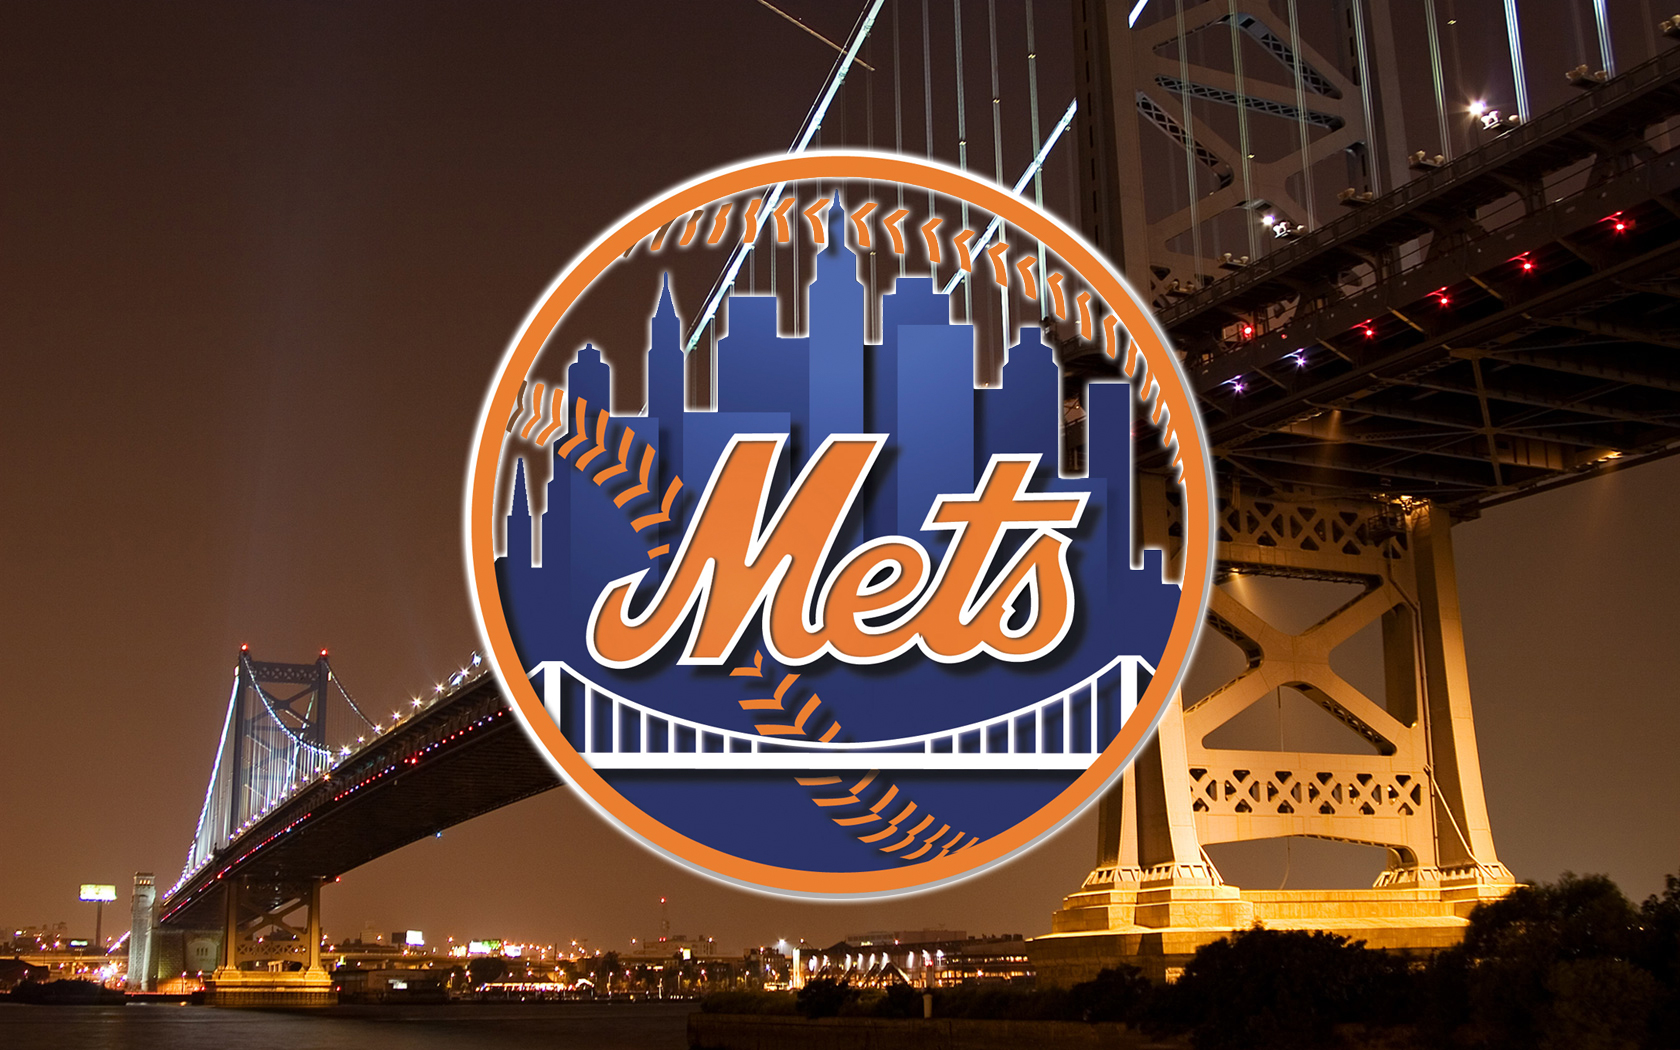 Fondos de pantalla de New York Mets Wallpapers de New York Mets